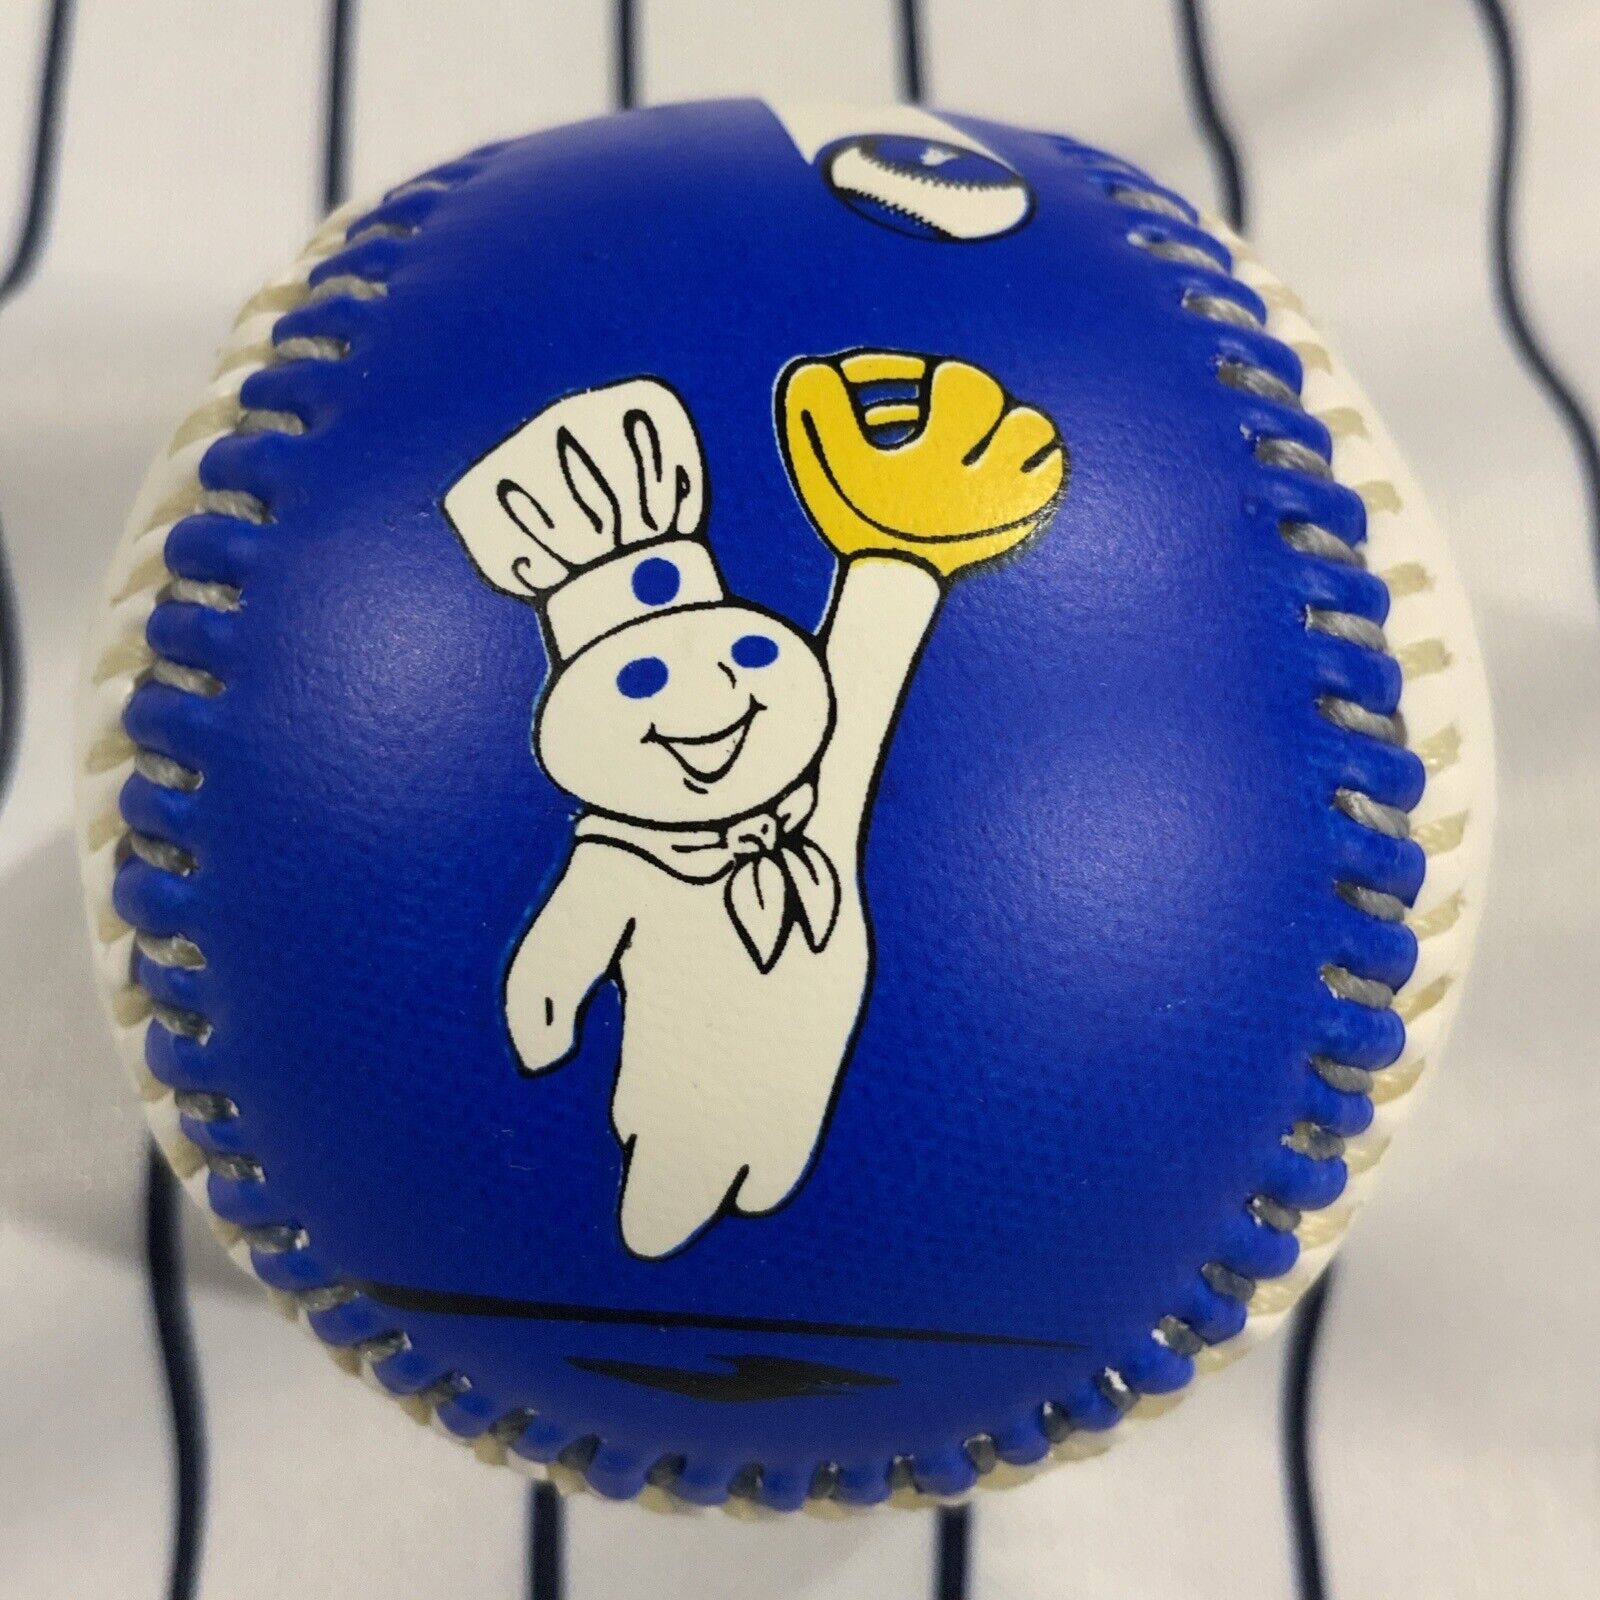 Pillsbury Dough Boy 2000 Promotional Souvenir baseball collectible ball Rare